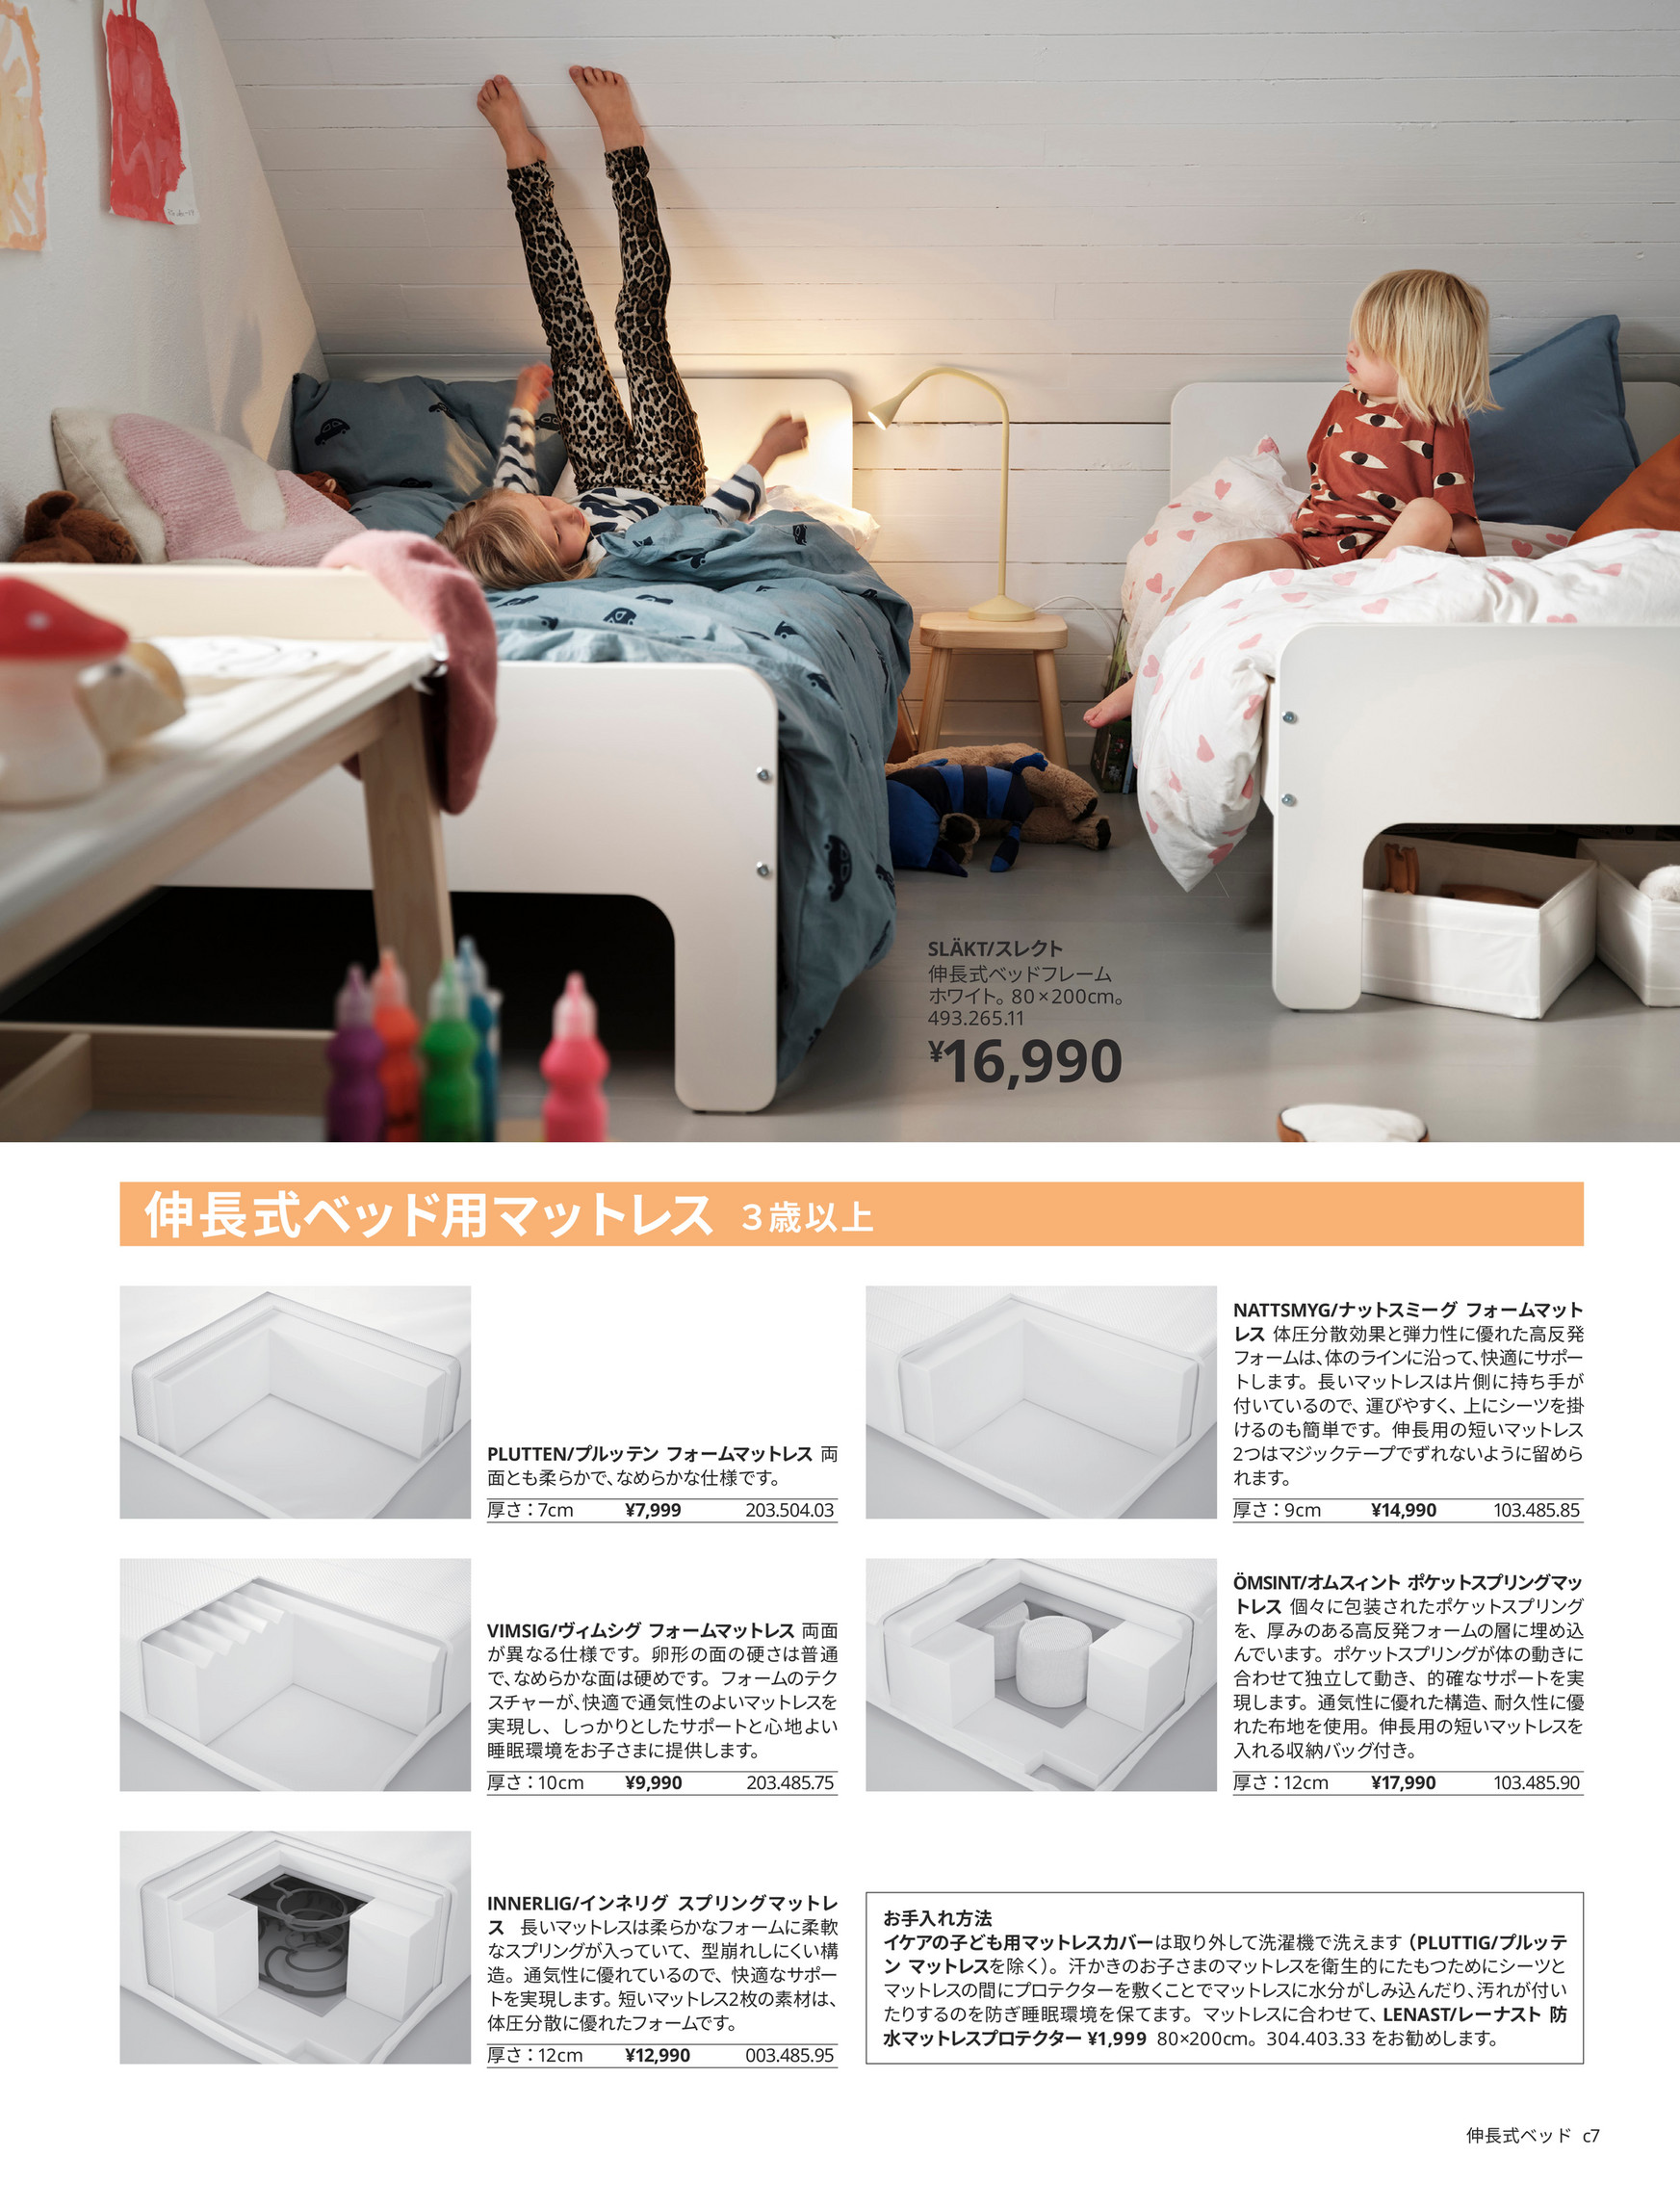 IKEA 赤ちゃんと子どもの眠りのカタログ - ページ 8-9